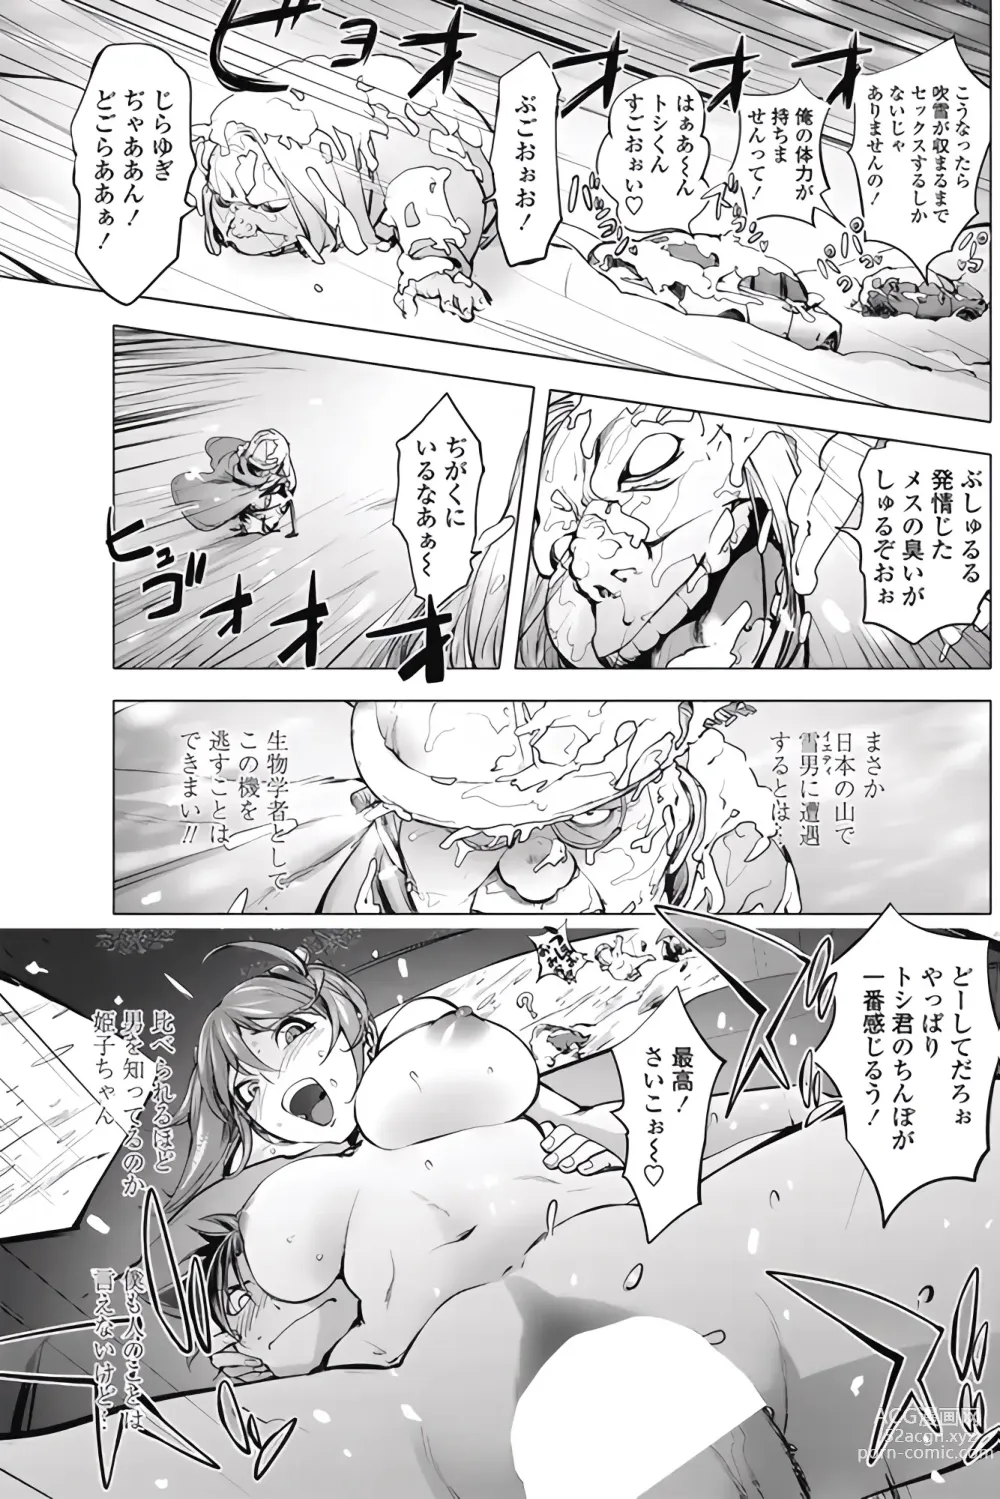 Page 17 of manga Ojou to Toshio no Christmas